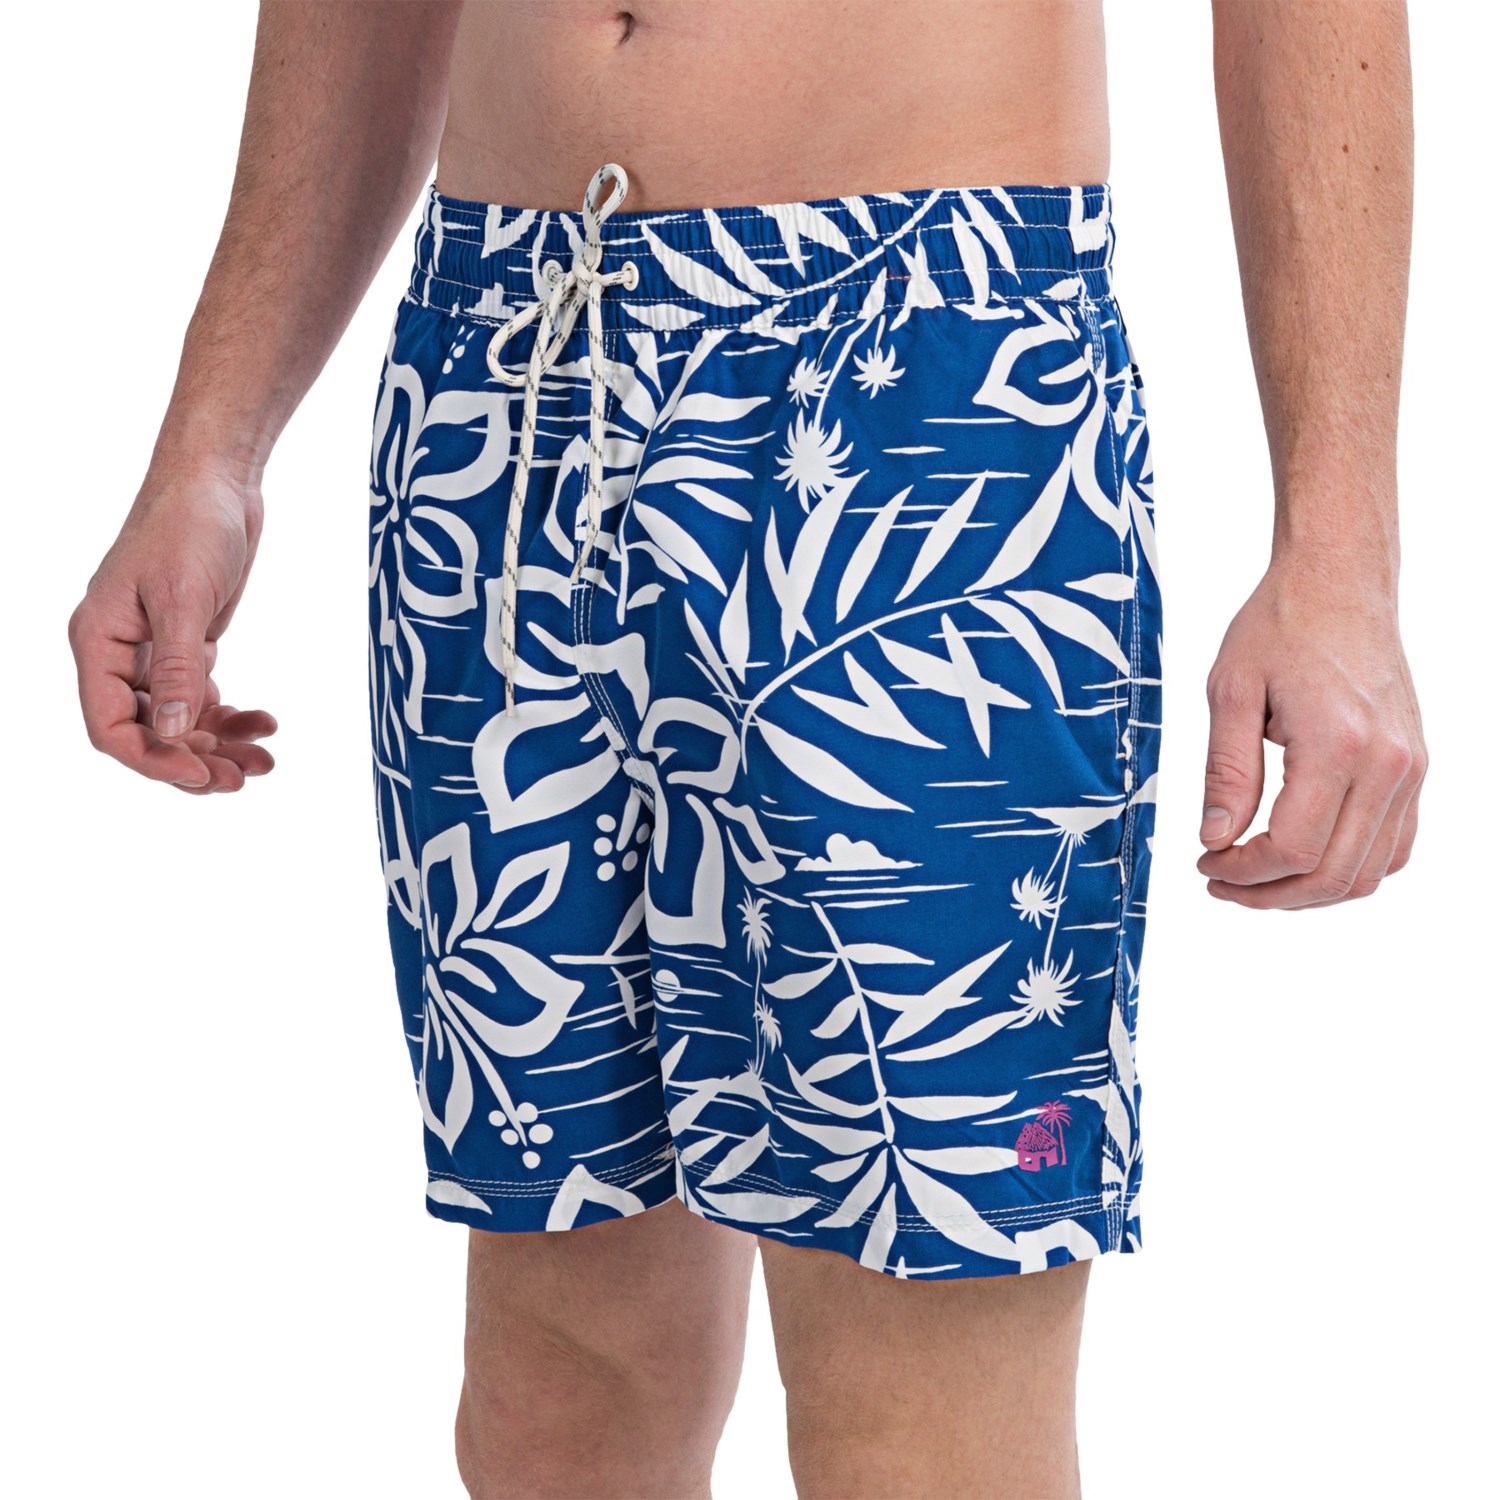 Caribbean Joe Hawaiian Print Swim Trunks (For Men) - Save 53%